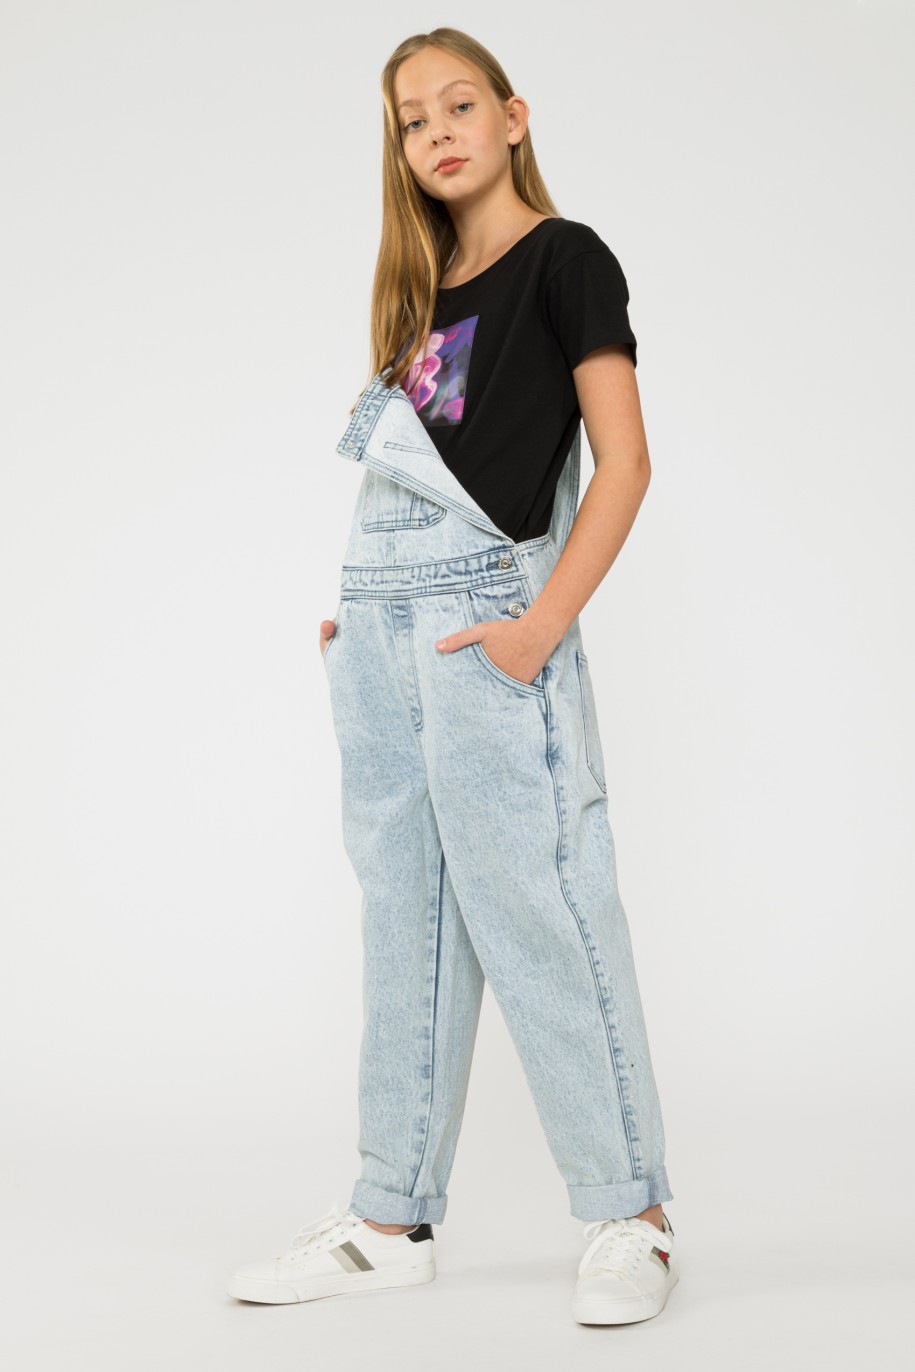 Jeansowe długie ogrodniczki dla dziewczyny - 33611